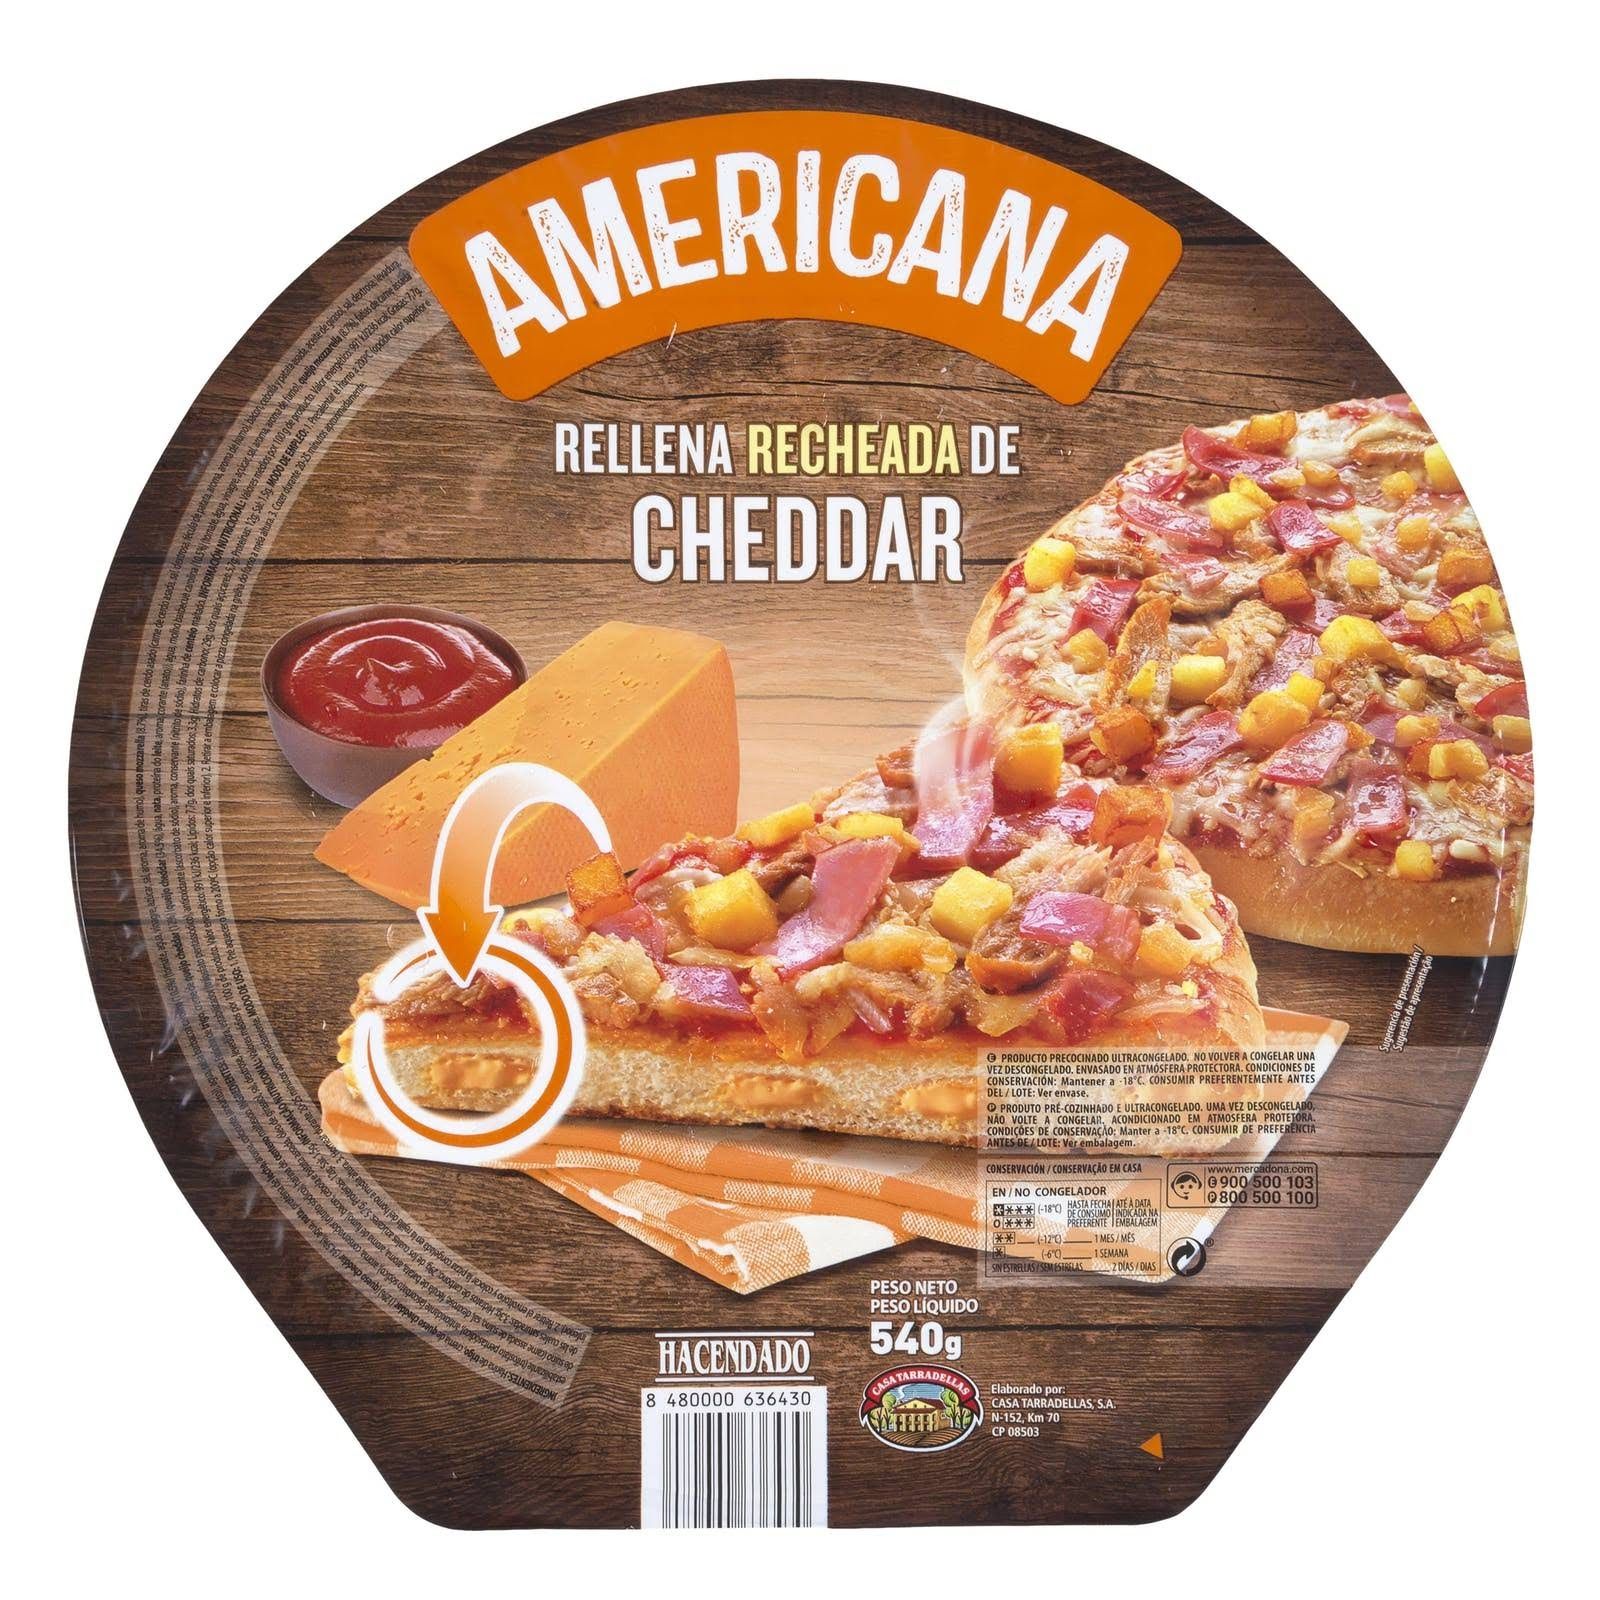 pizza-americana-rellena-de-cheddar-hacendado-mercadona-1.jpg